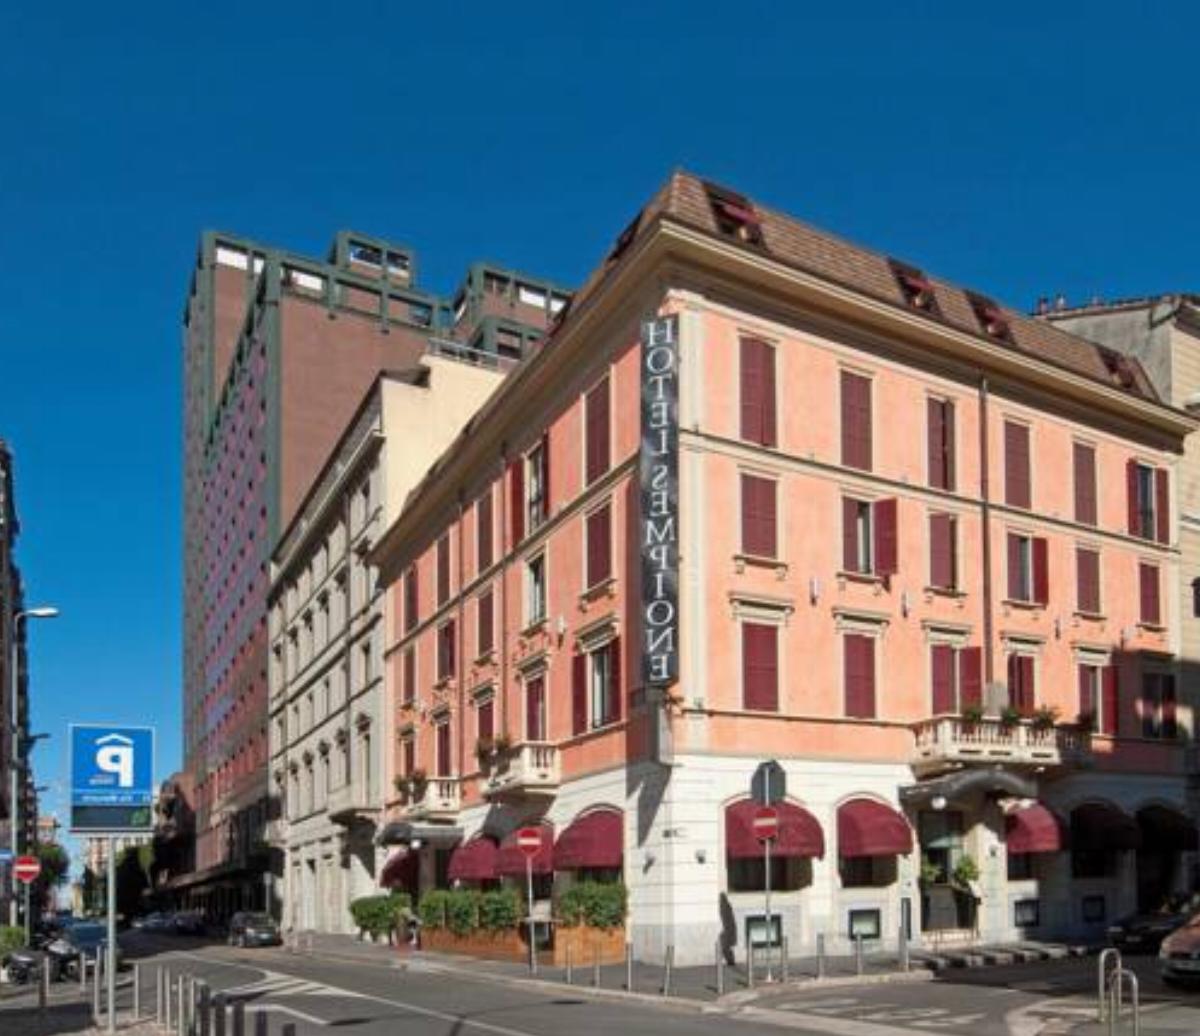 Hotel Sempione Hotel Milan Italy